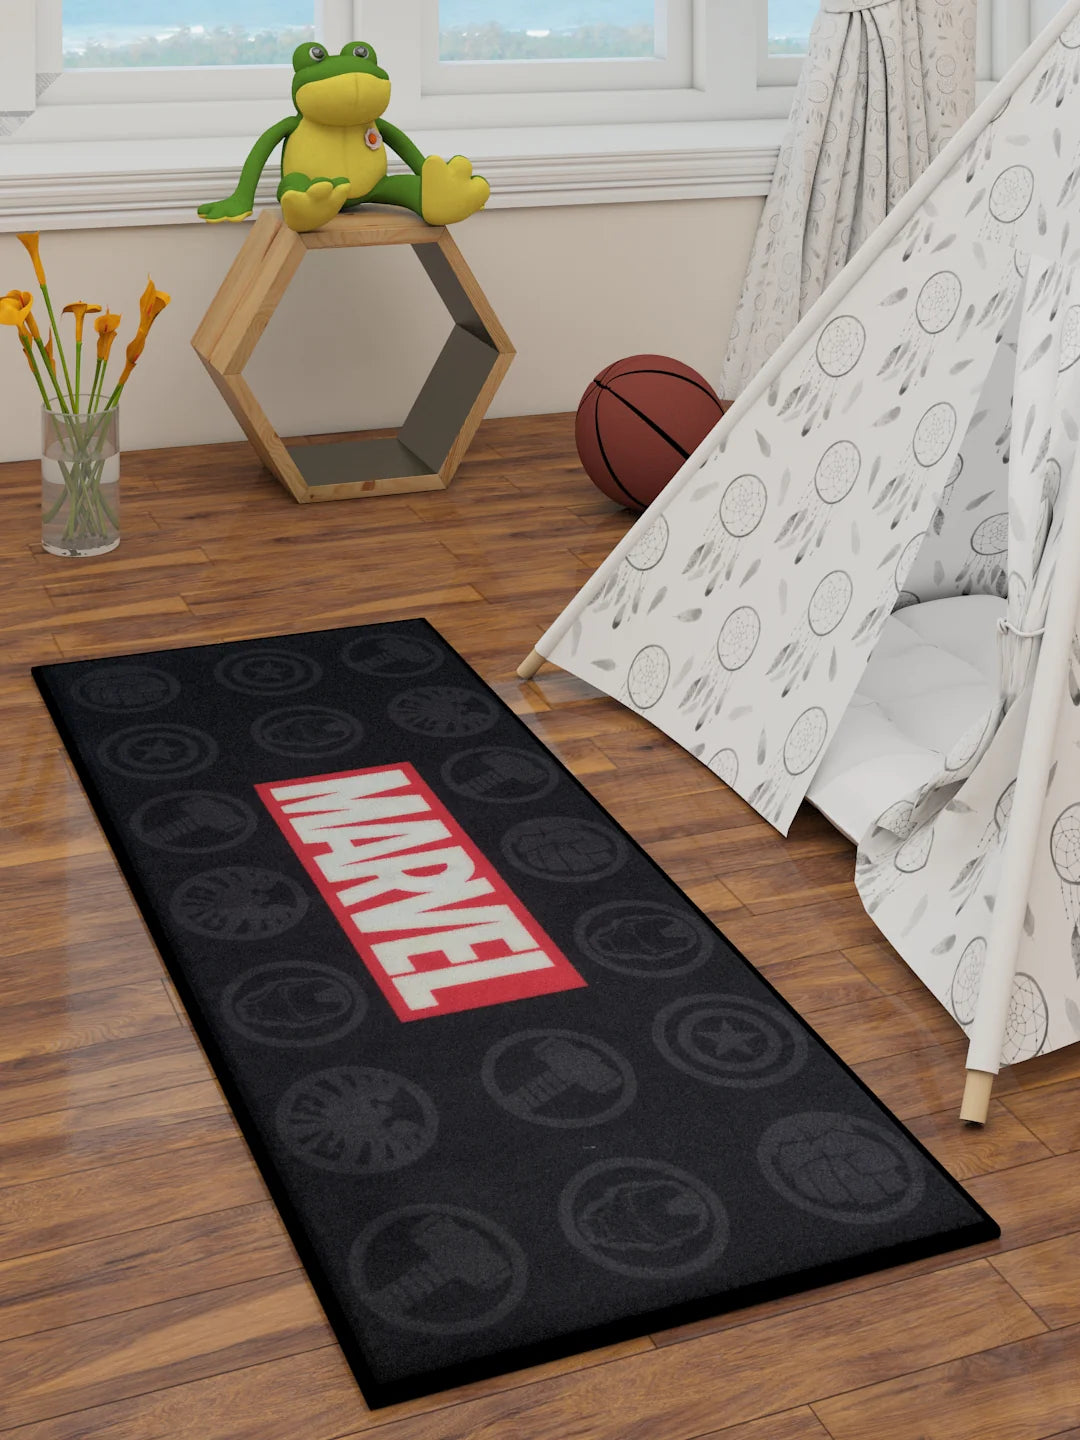 Unleash Heroic Adventures with Marvel's Avengers Kids Runner Carpet